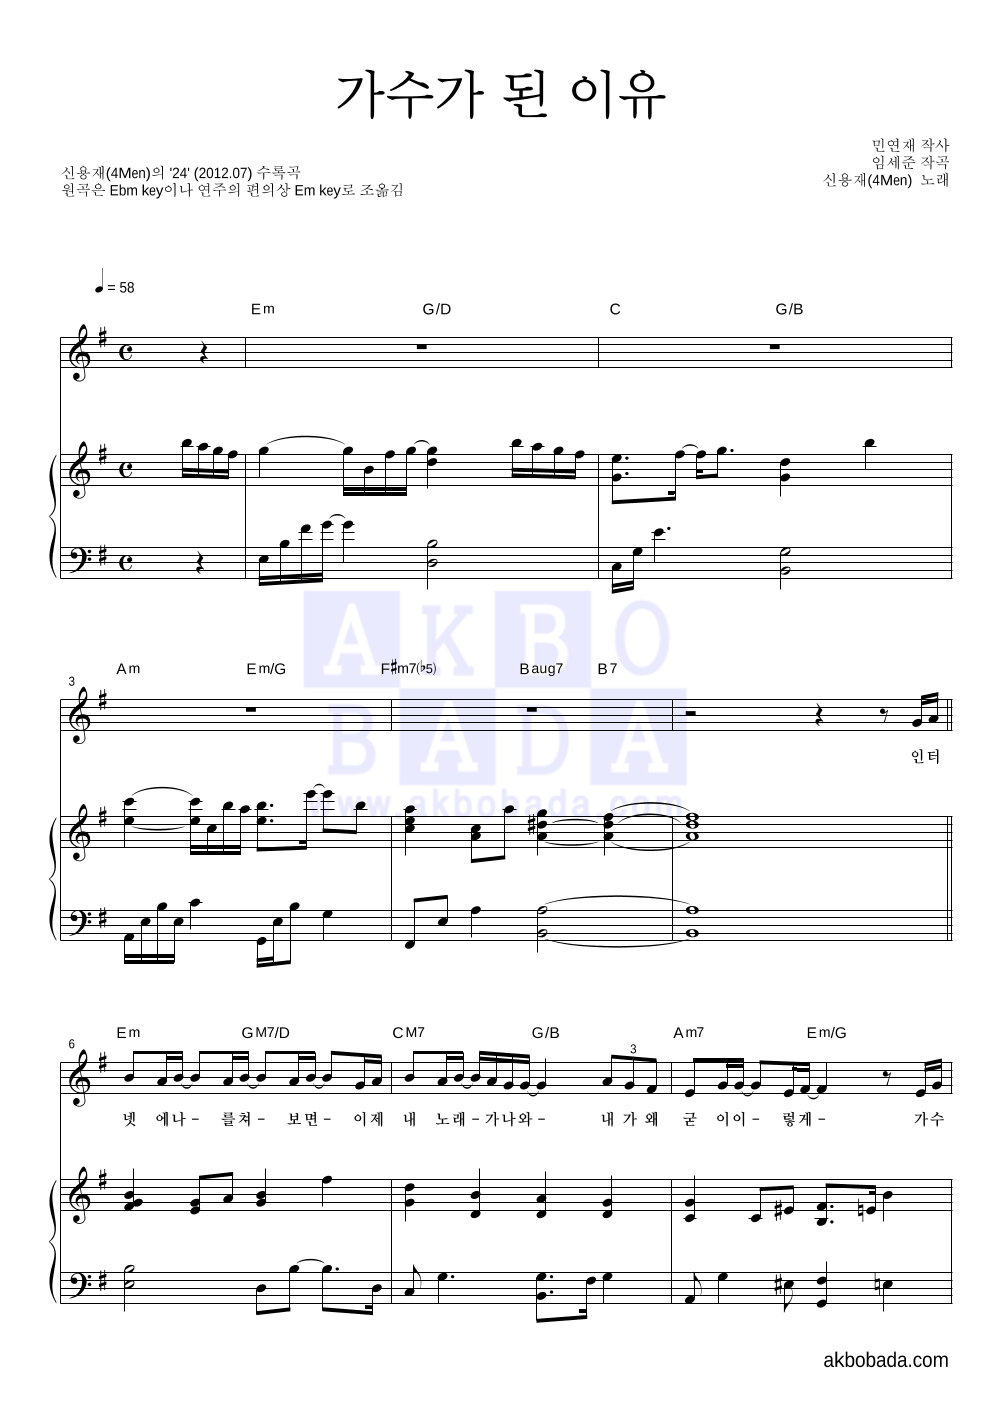 신용재 - 가수가 된 이유 피아노 3단 악보 